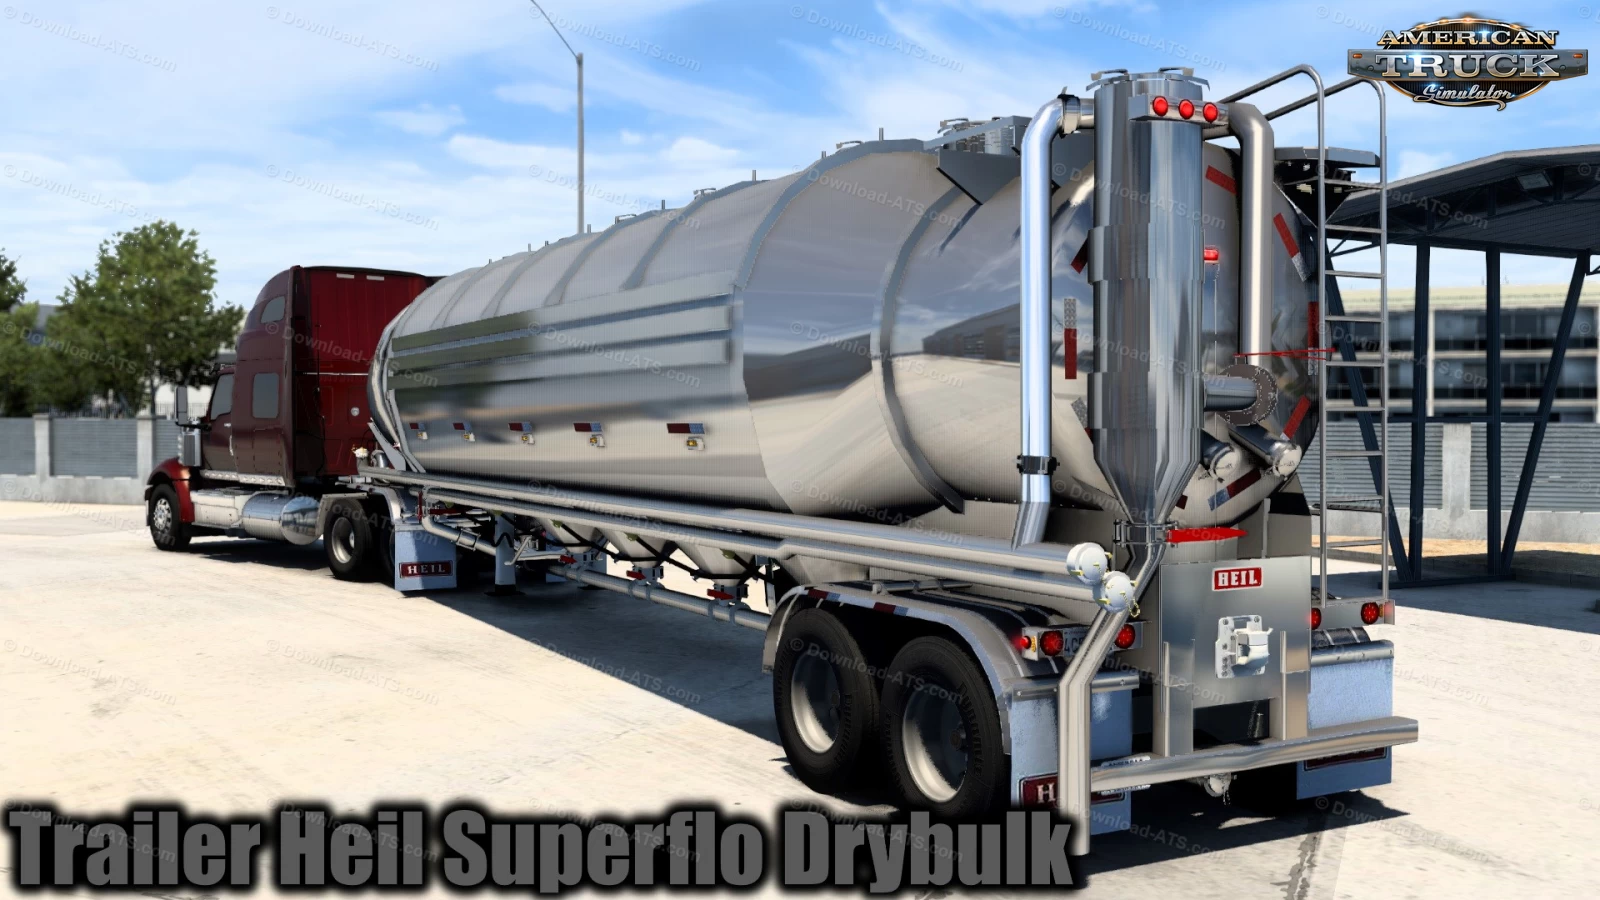 Trailer Heil Superflo Drybulk Ownable v1.4 (1.45.x) for ATS